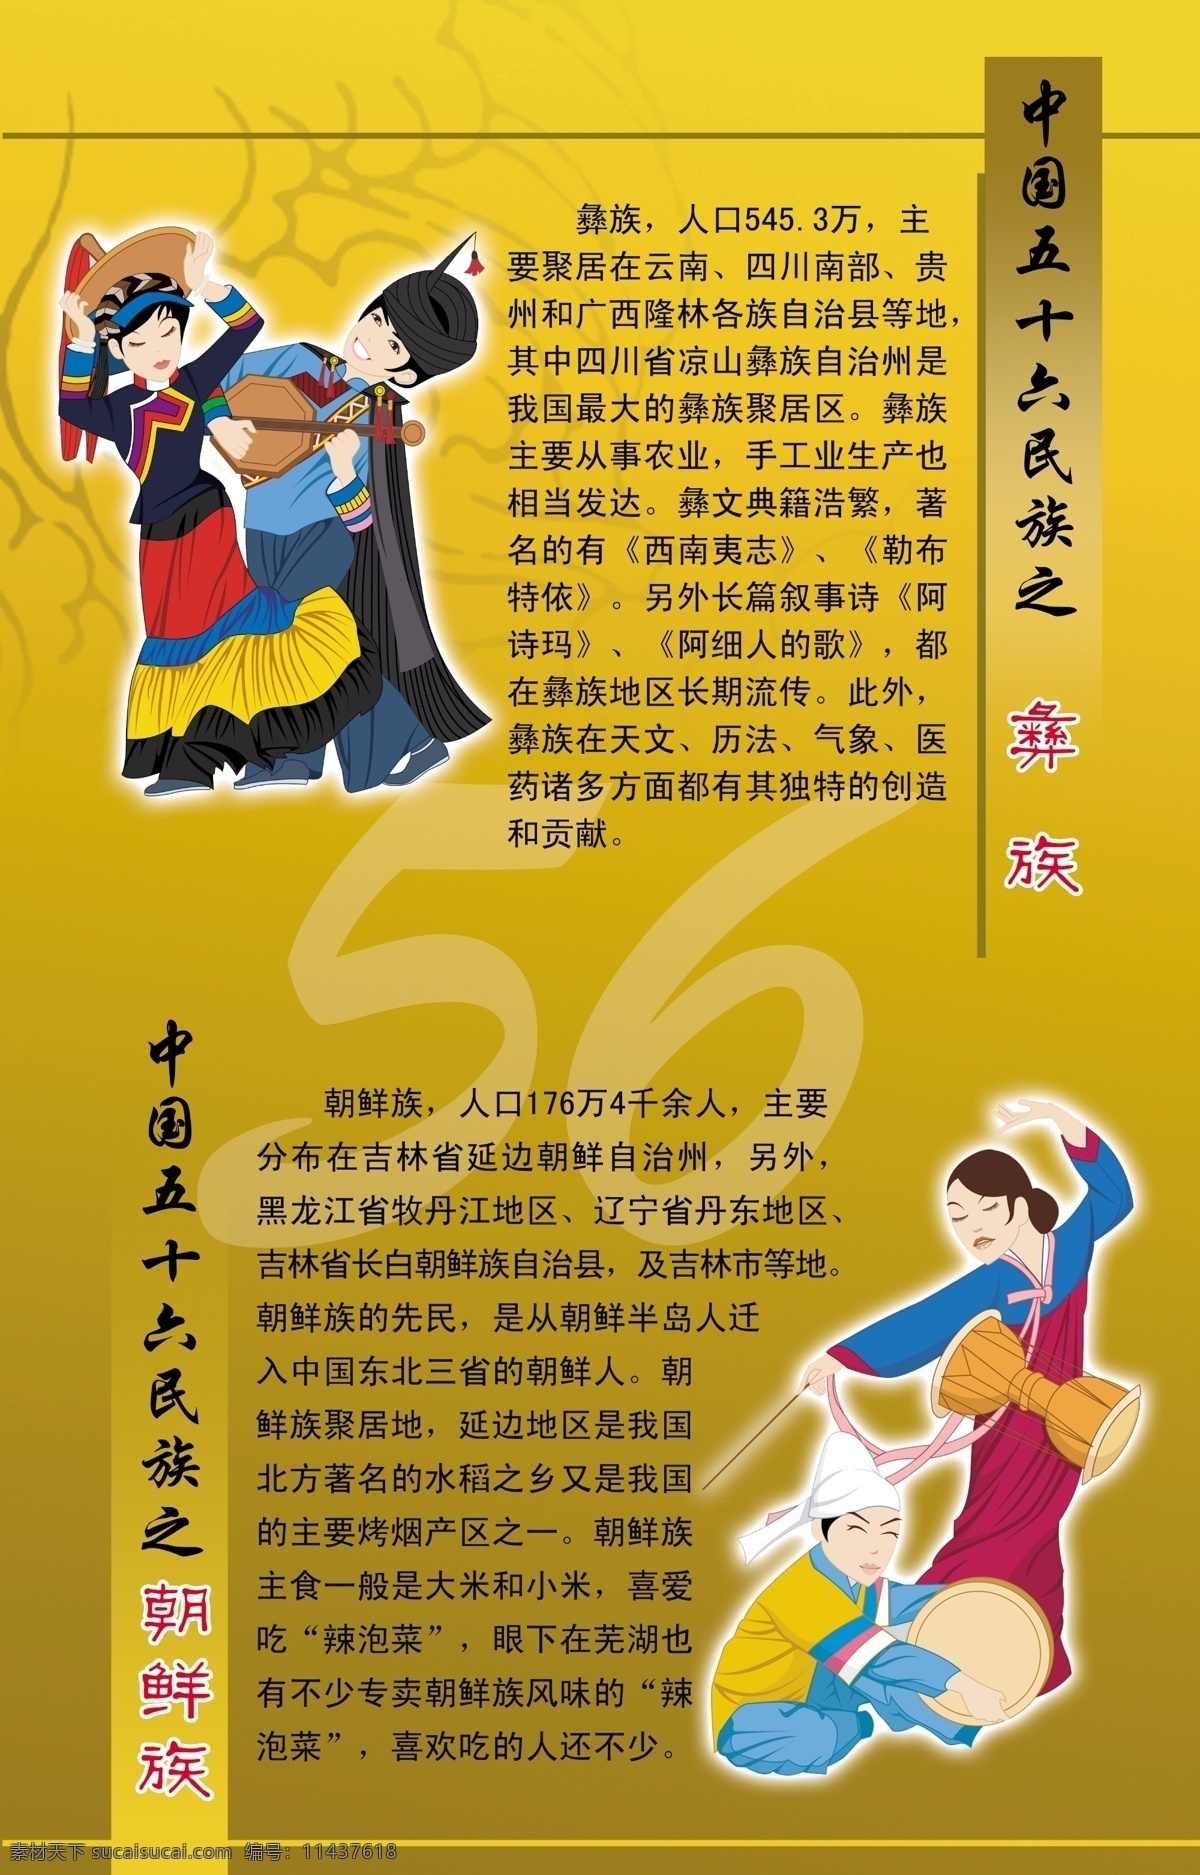 少数民族 56个民族 彝族 朝鲜族 民族服饰 民族漫画人物 民族知识 底纹展板模块 其他模版 广告设计模板 源文件